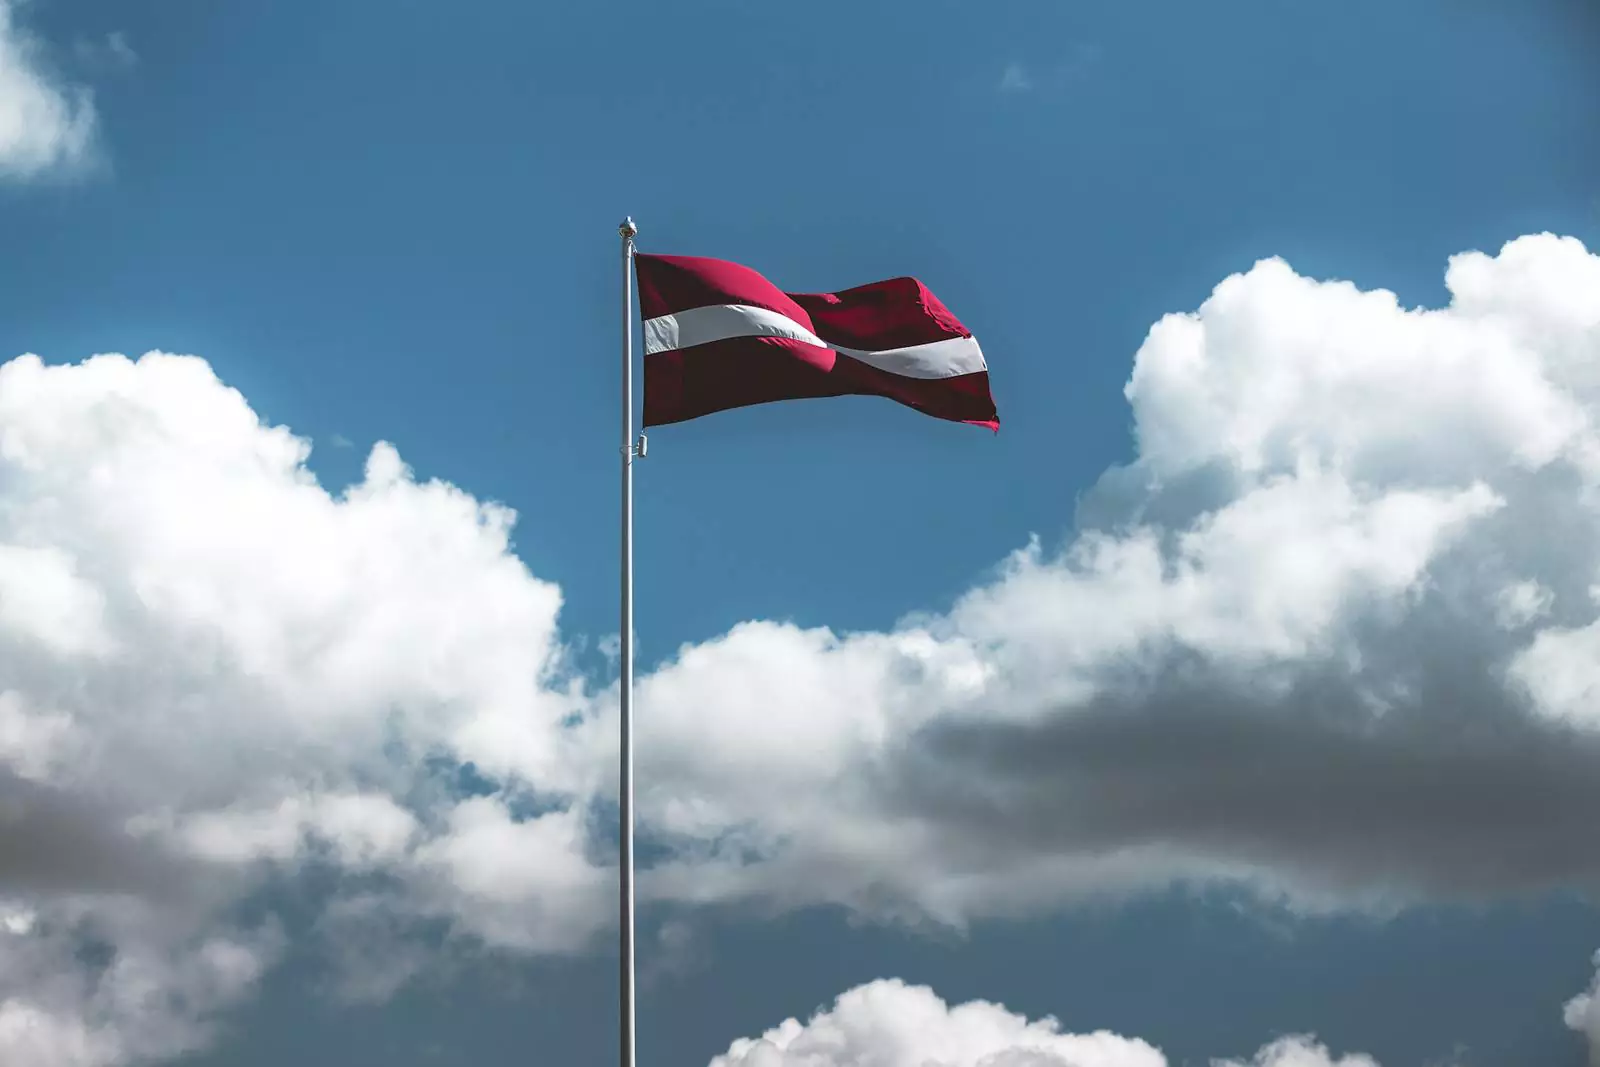 Флаг Латвии.